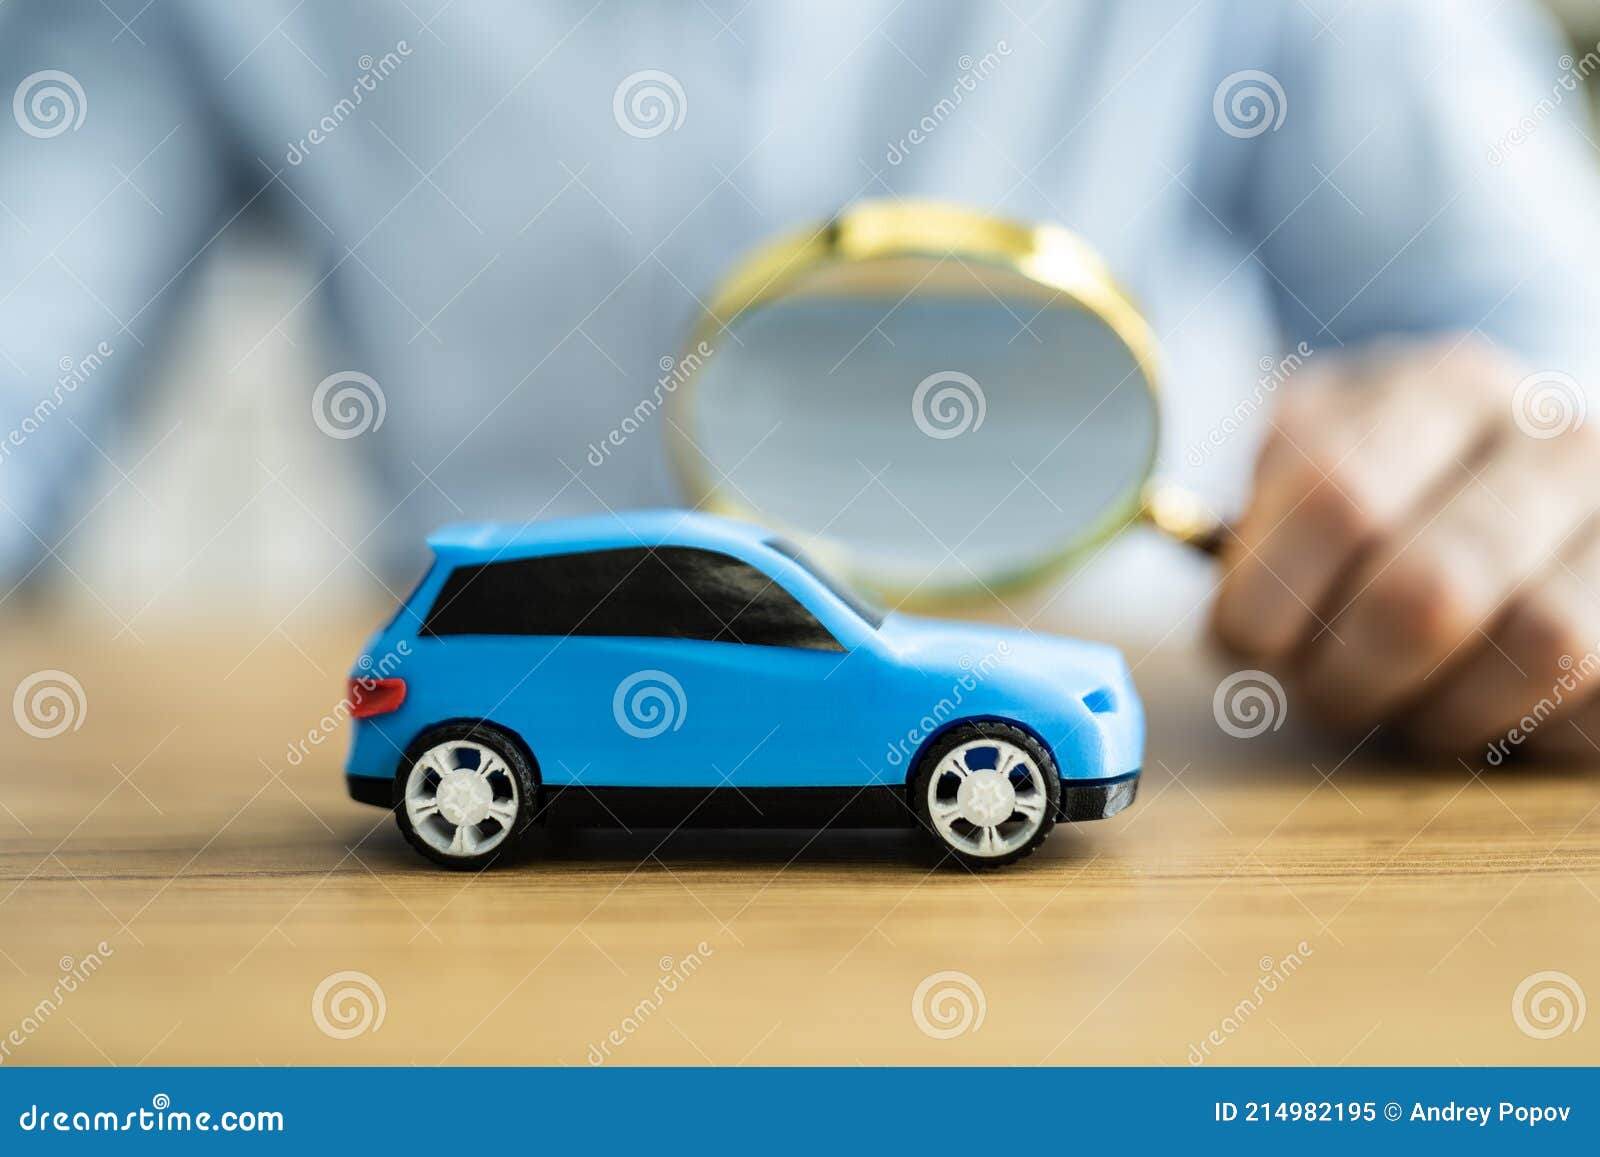 auto auto scrutinize and check